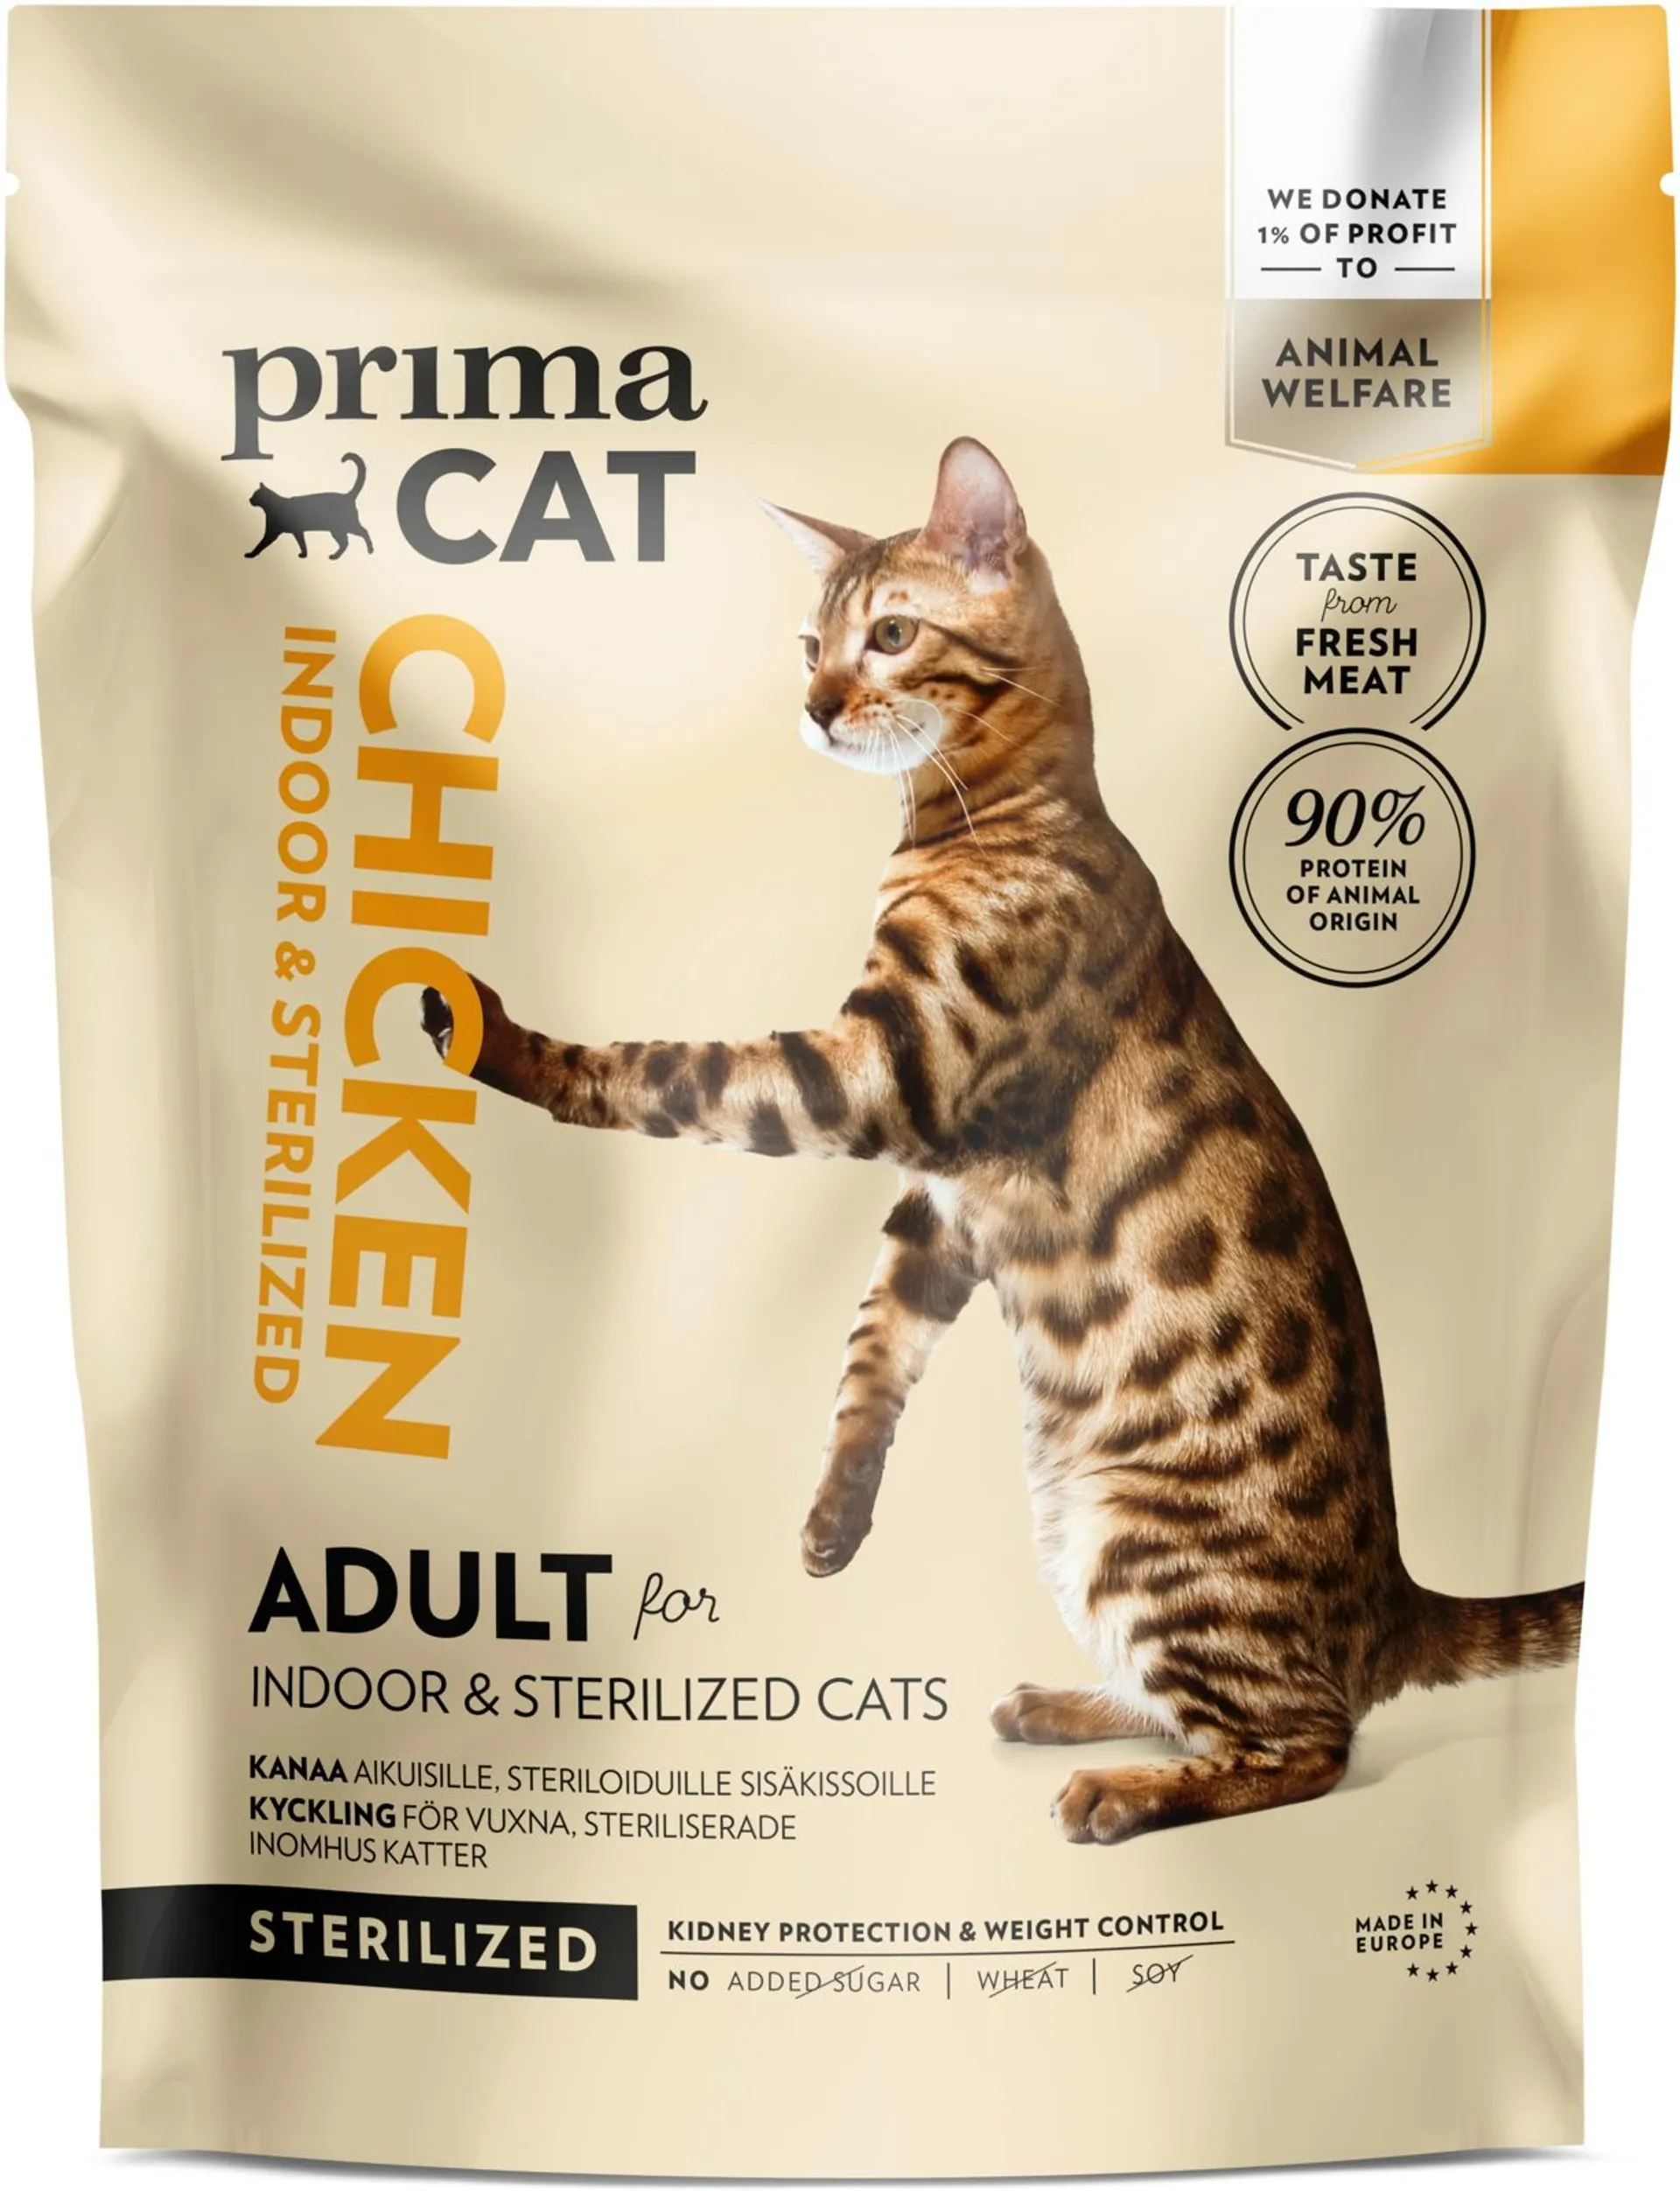 PrimaCat Kana steriloiduille aikuisille kissoille 400 g